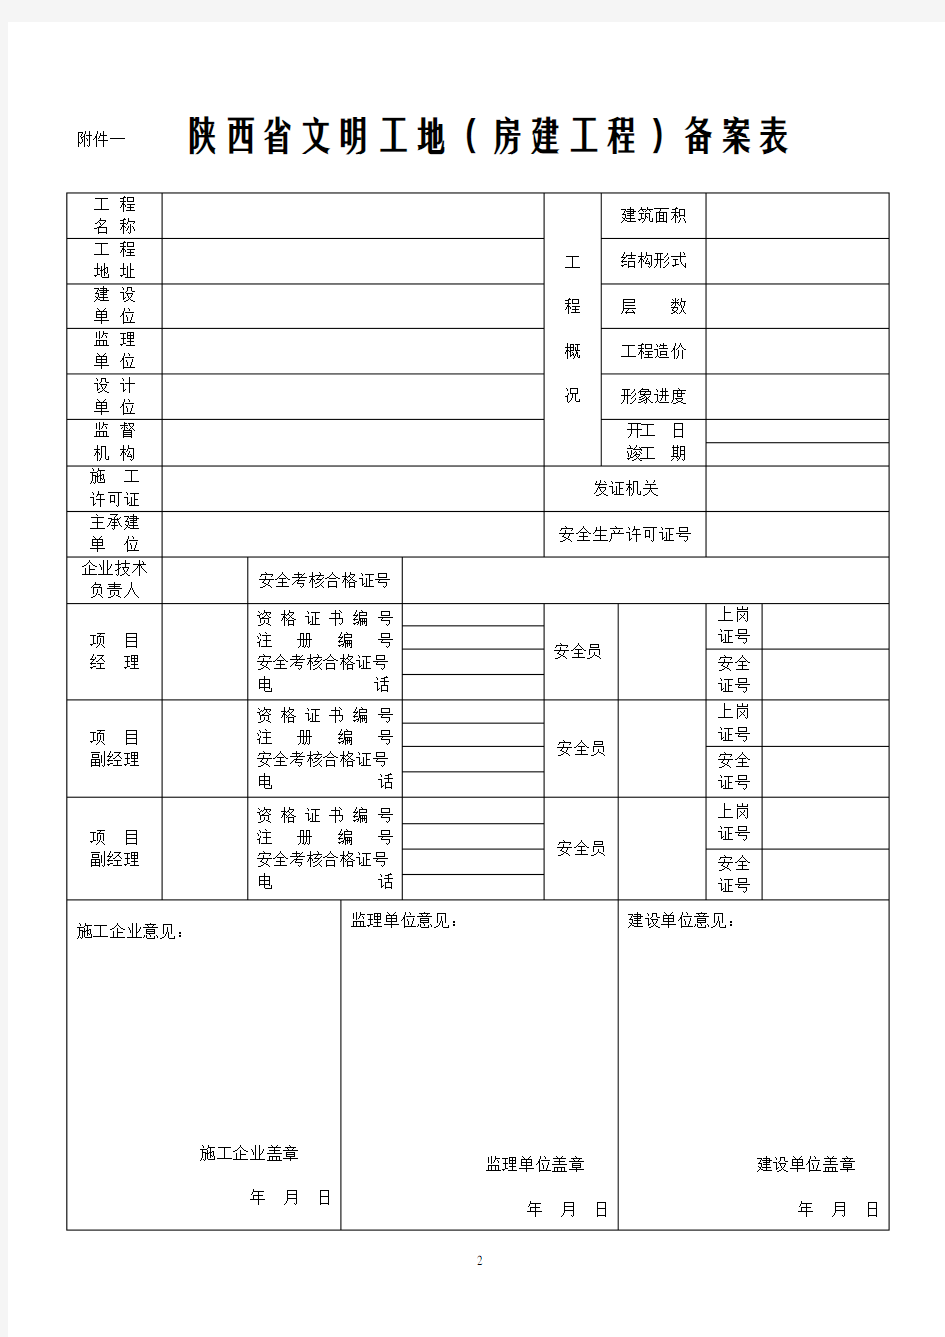 最新版《陕西省级文明工地全套表格》